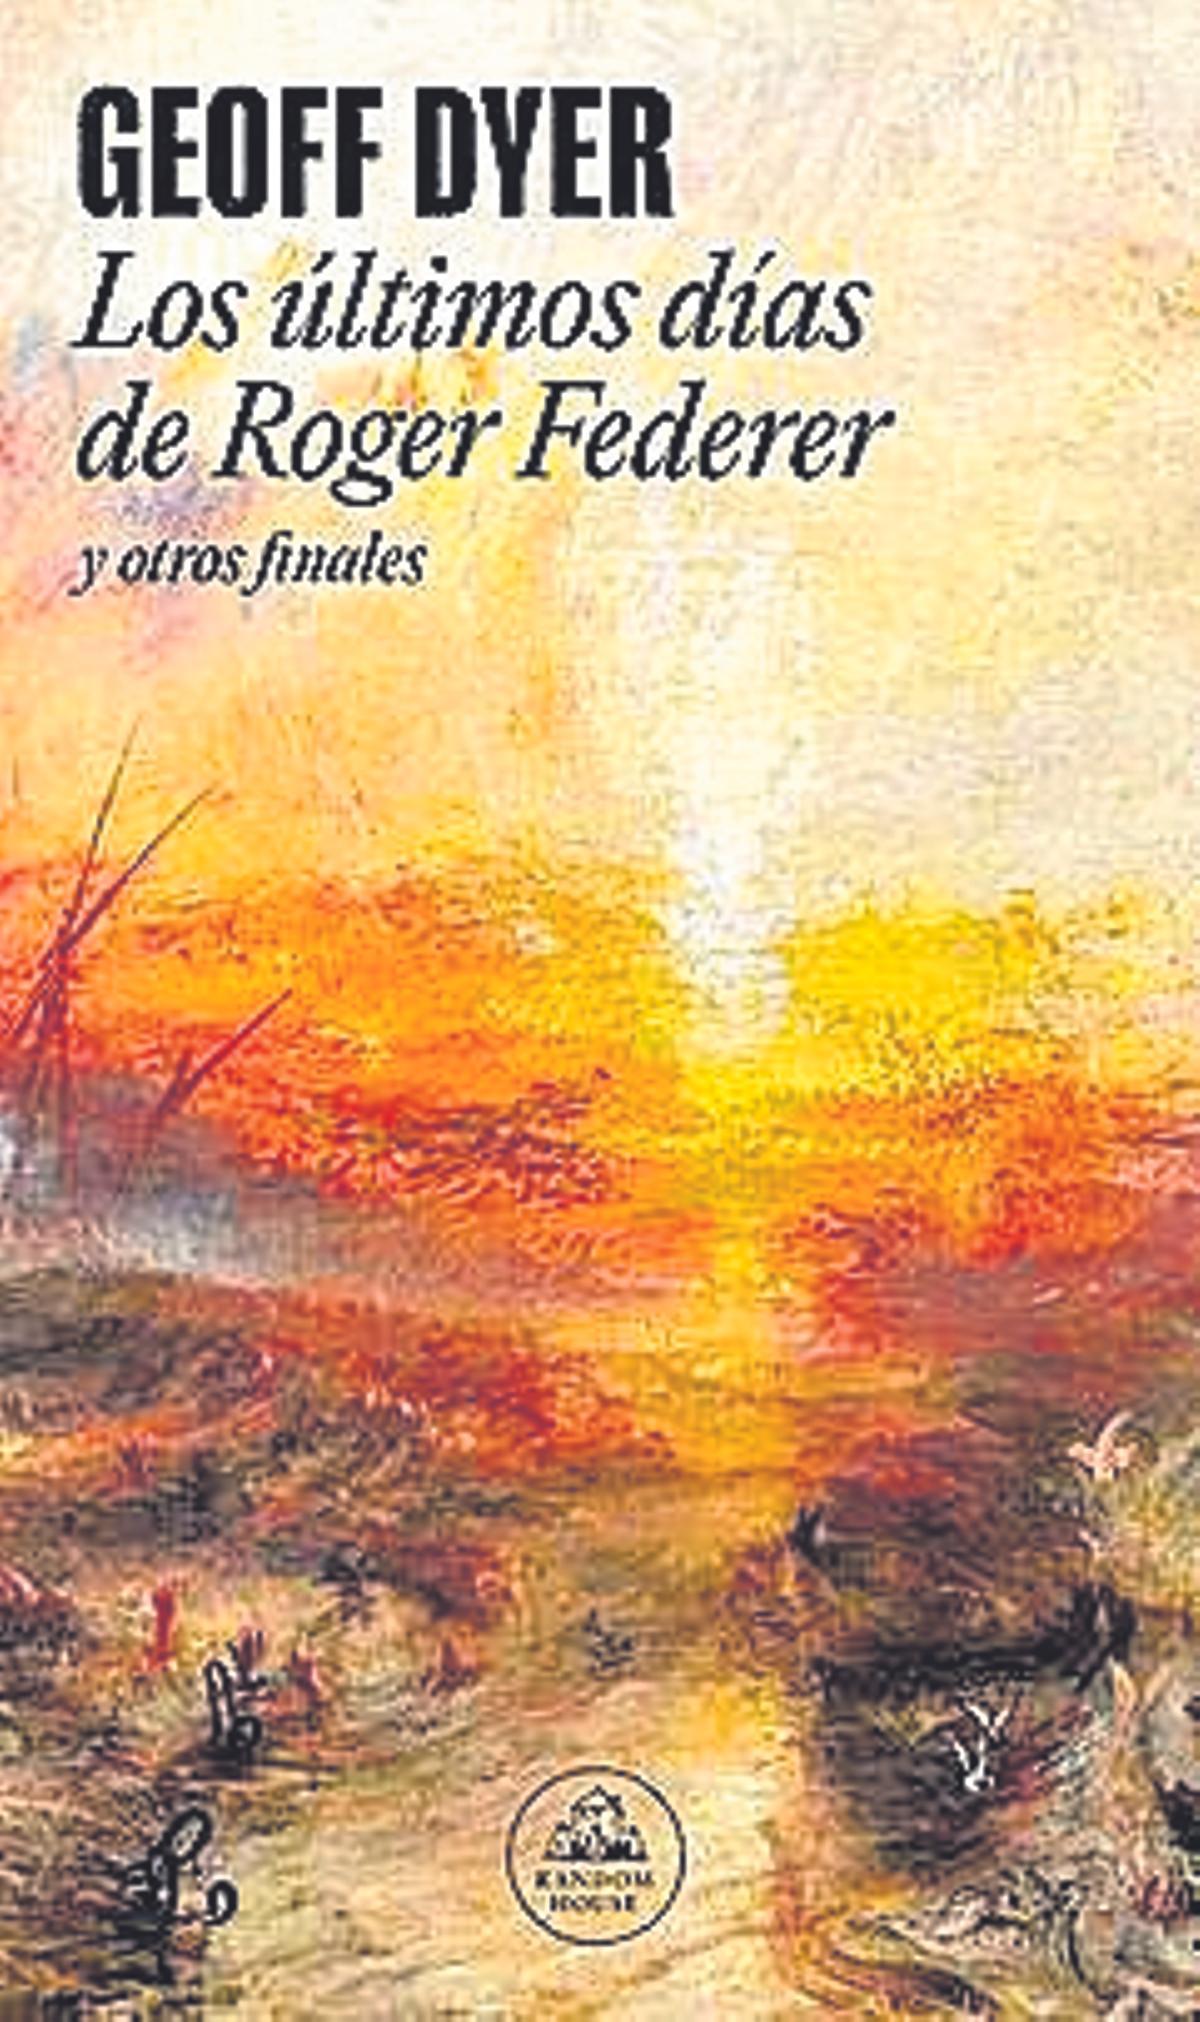 Geoff Dyer  Los últimos días de Roger Federer  Traducción de Damià Alou   Random House,   344 páginas / 19,85 euros